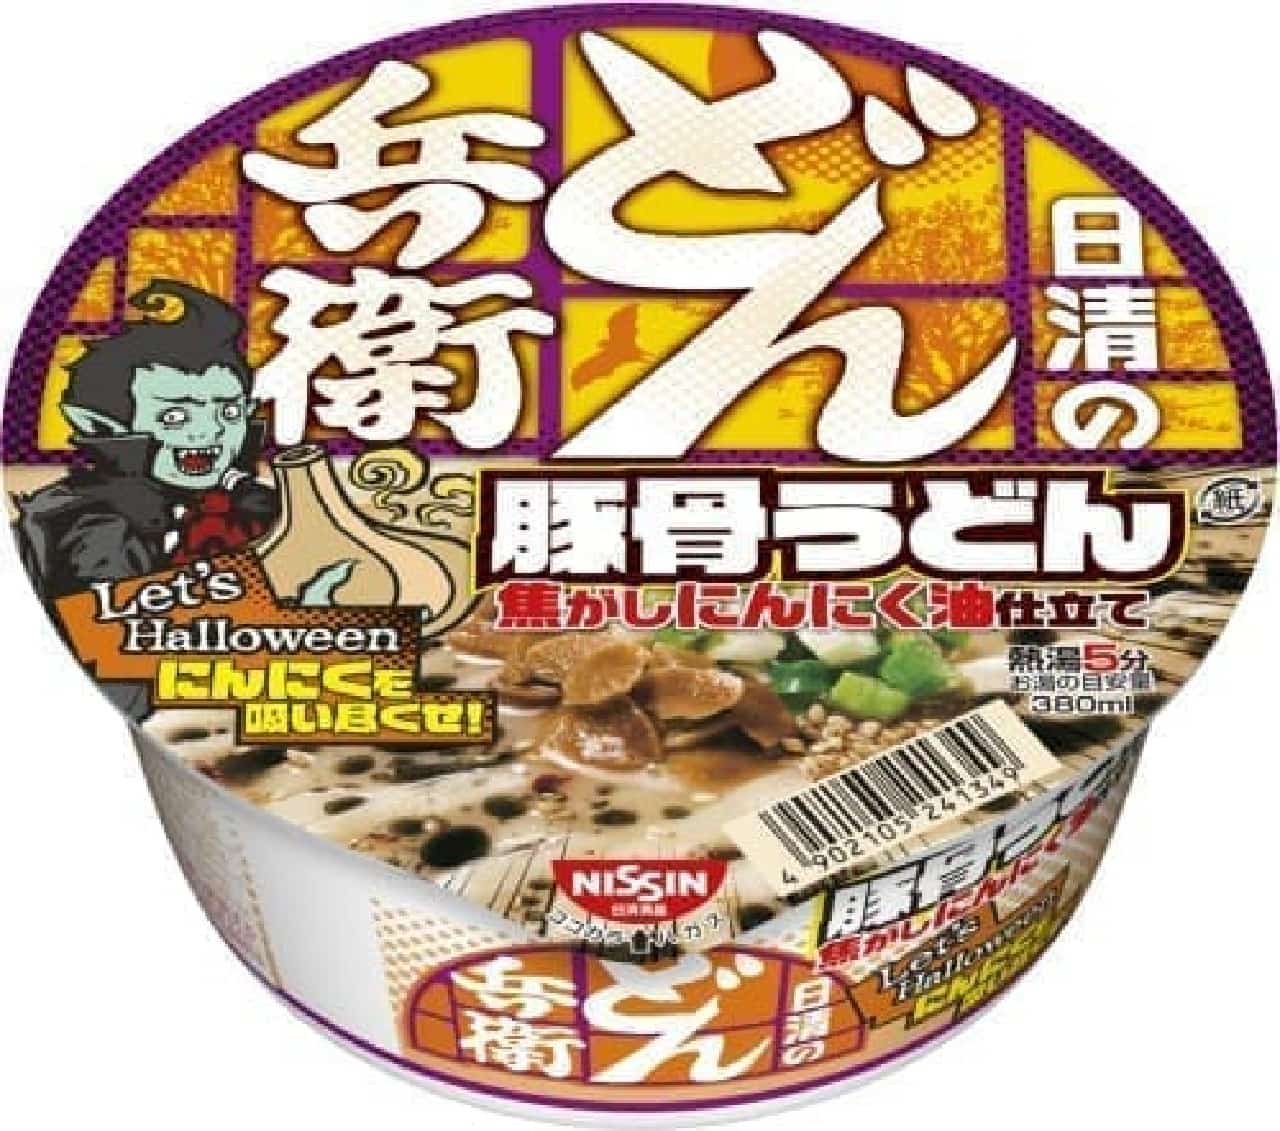 Nissin Foods "Nissin Donbei Pork Bone Udon Scorched Garlic Oil Tailoring"